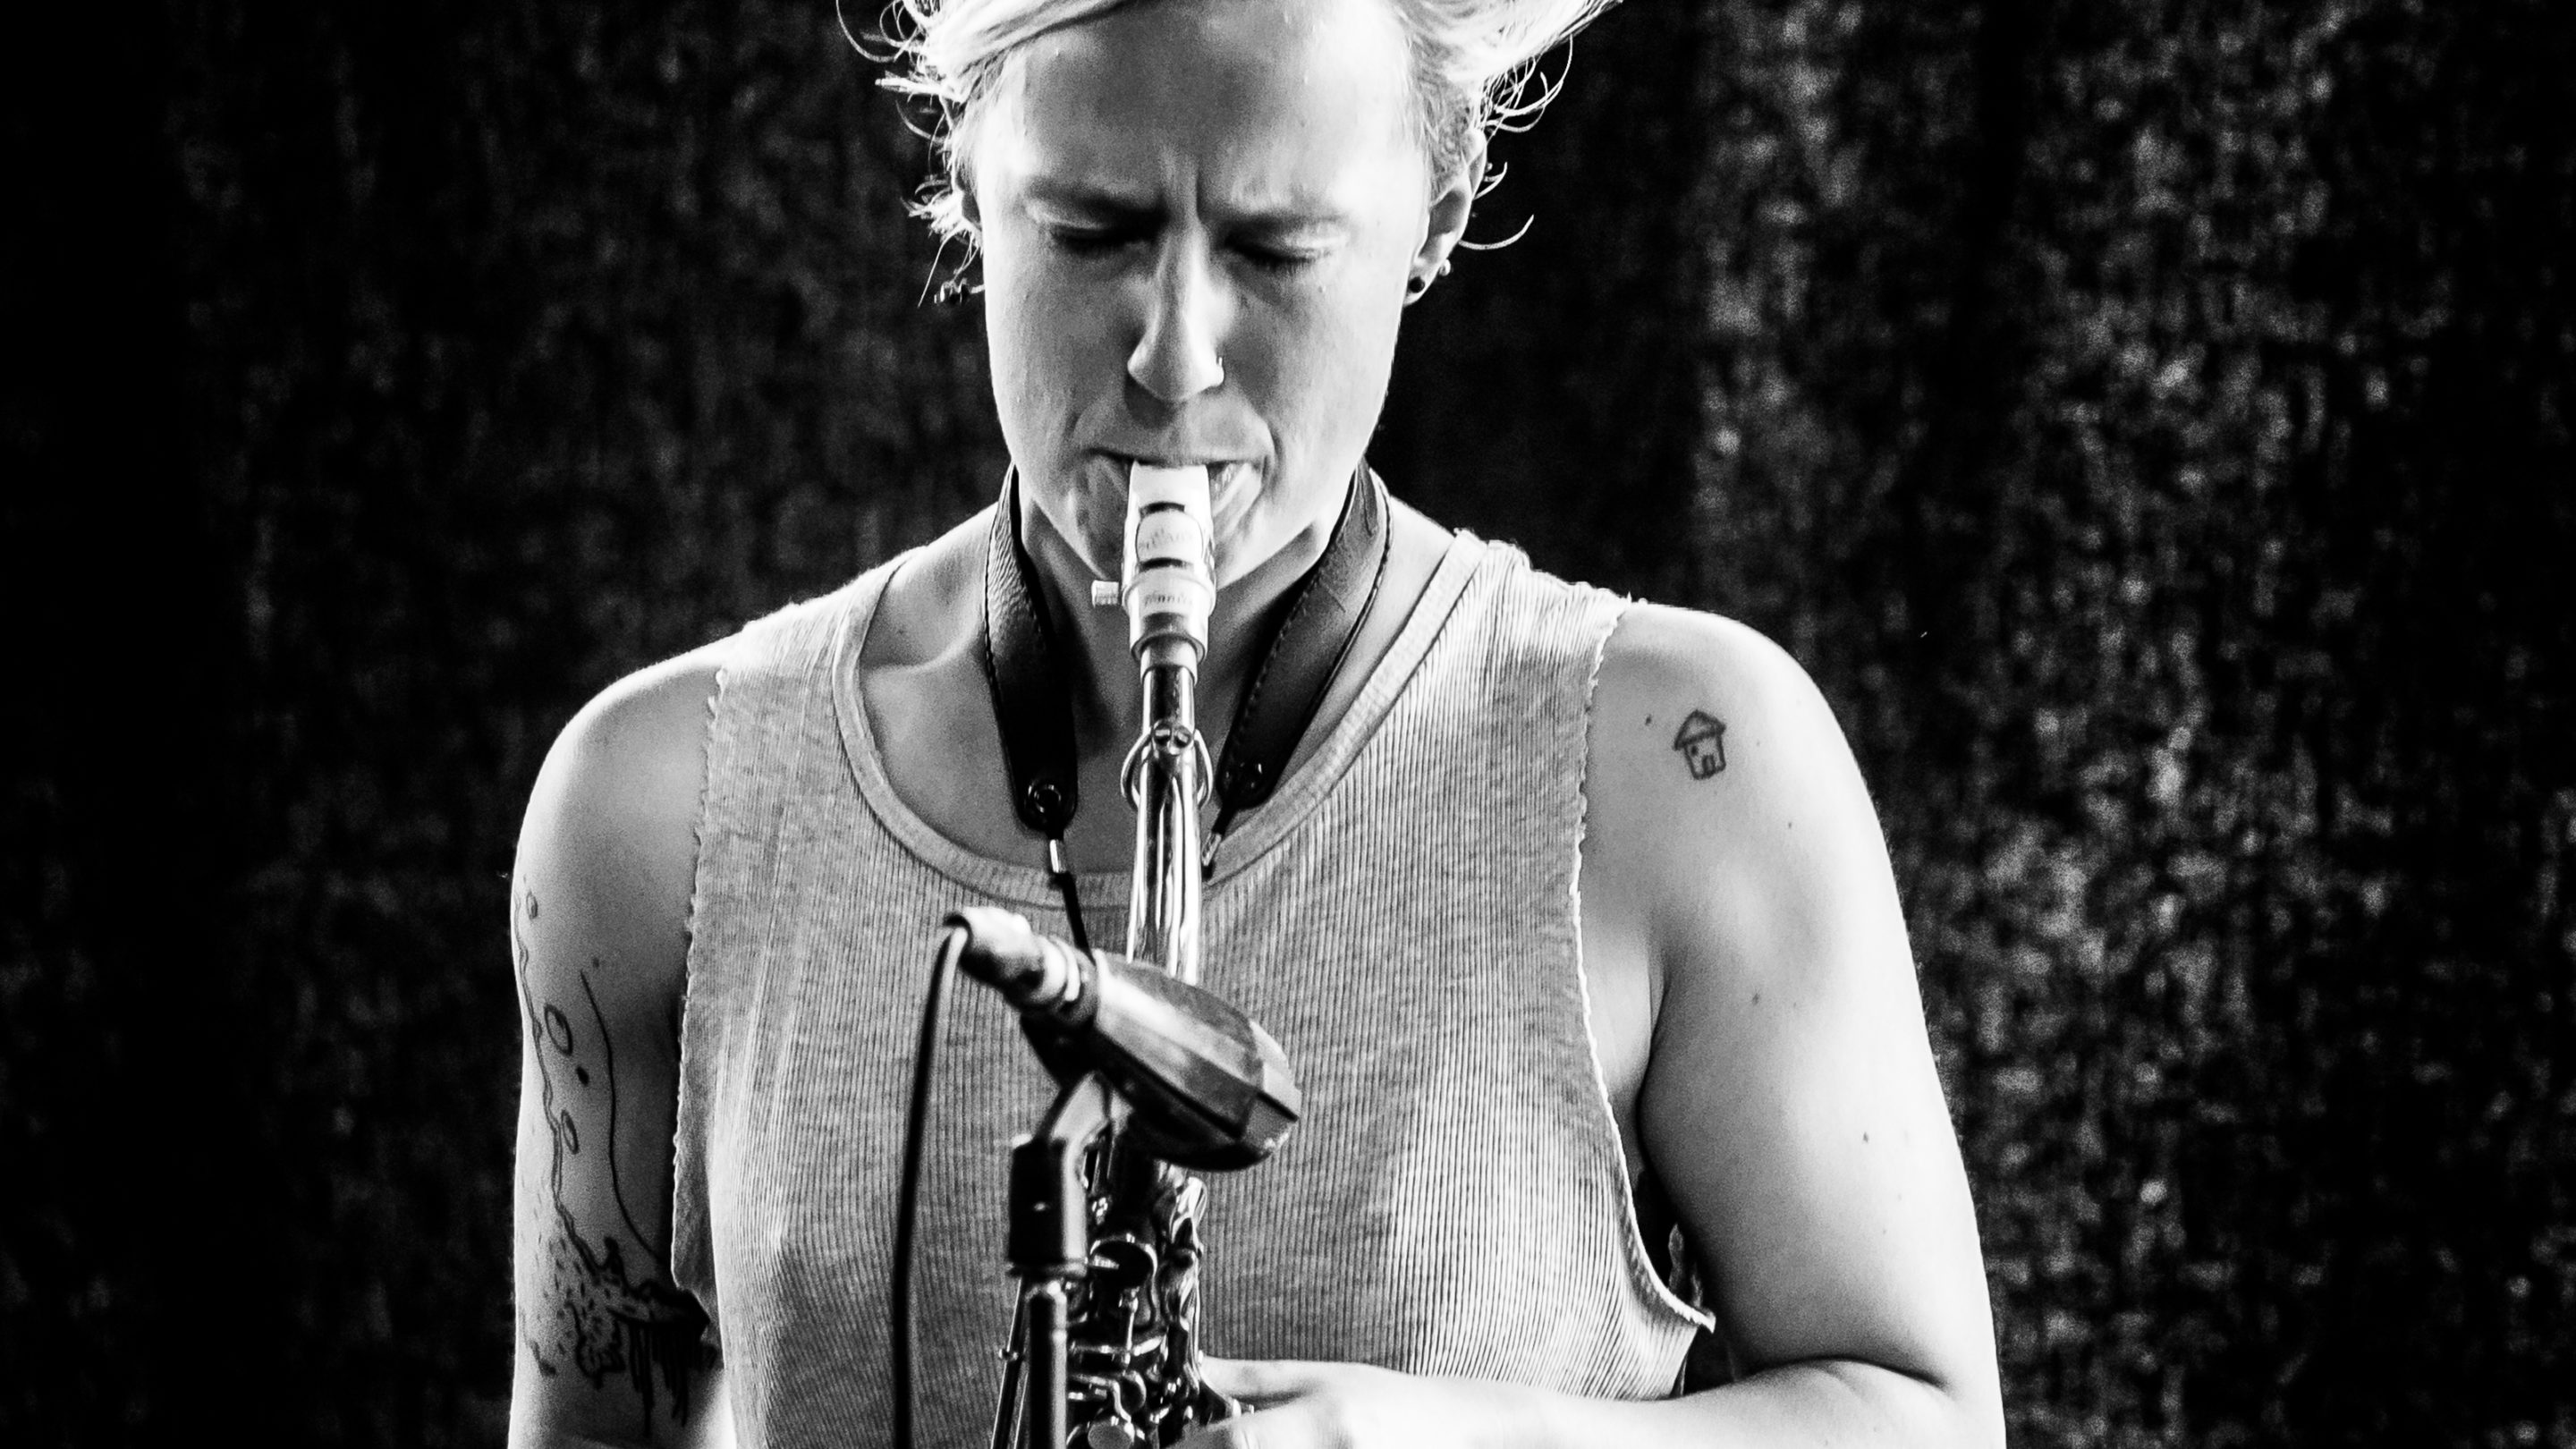 Et sort/hvid foto af Signe Emmeluth, der spiller saxofon.